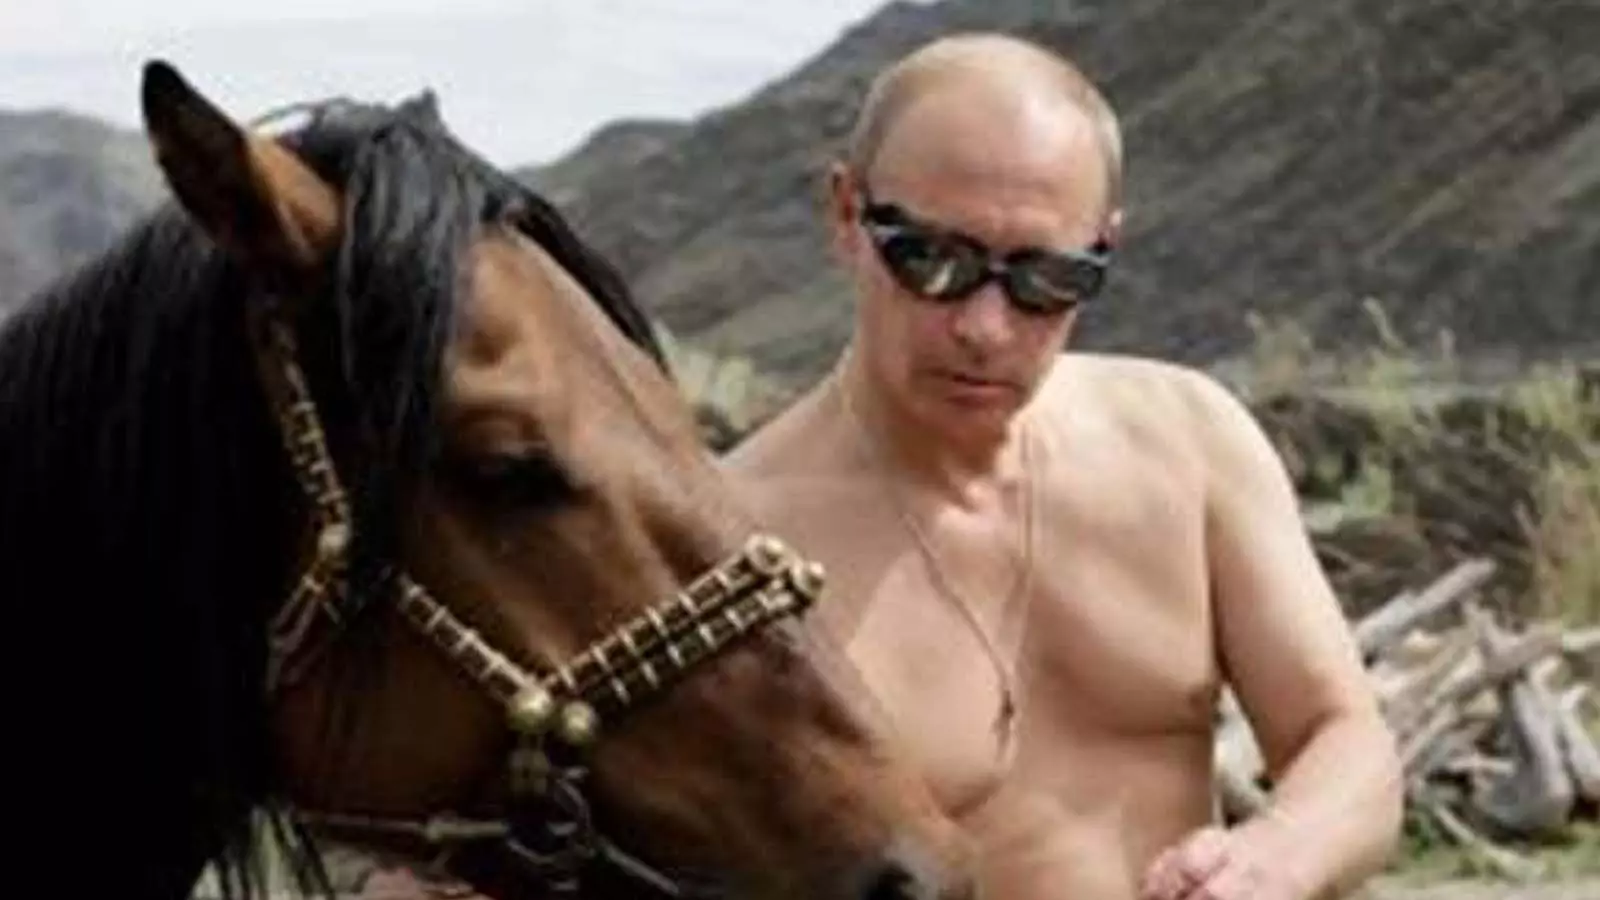 Russias sexiest man Vladimir Putin